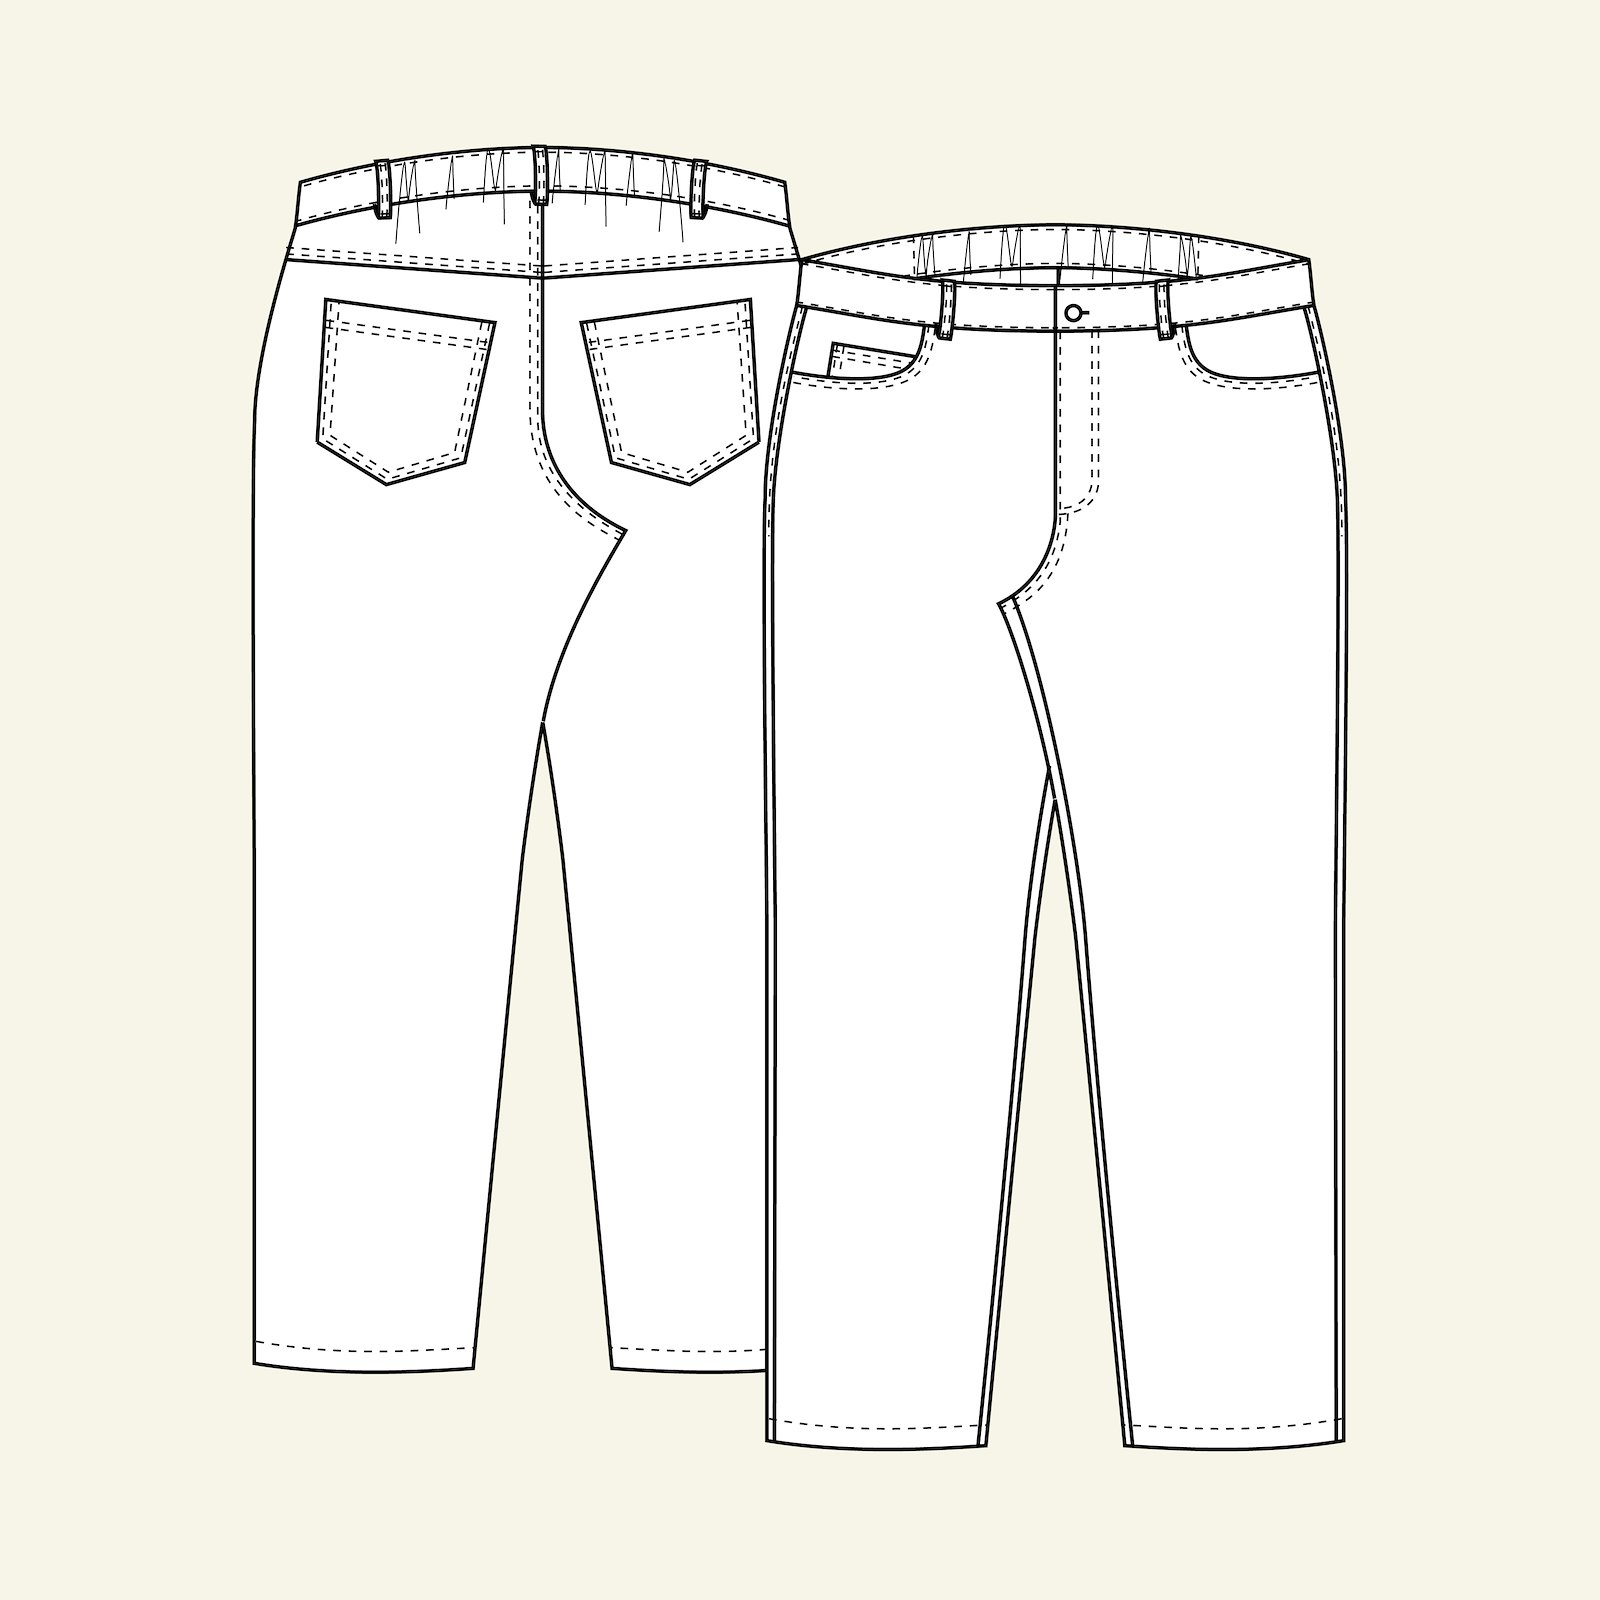 Klassisk jeans m/ strikk i linning b, 56 p70007000_p70007001_p70007002_p70007003_p70007004_pack_b